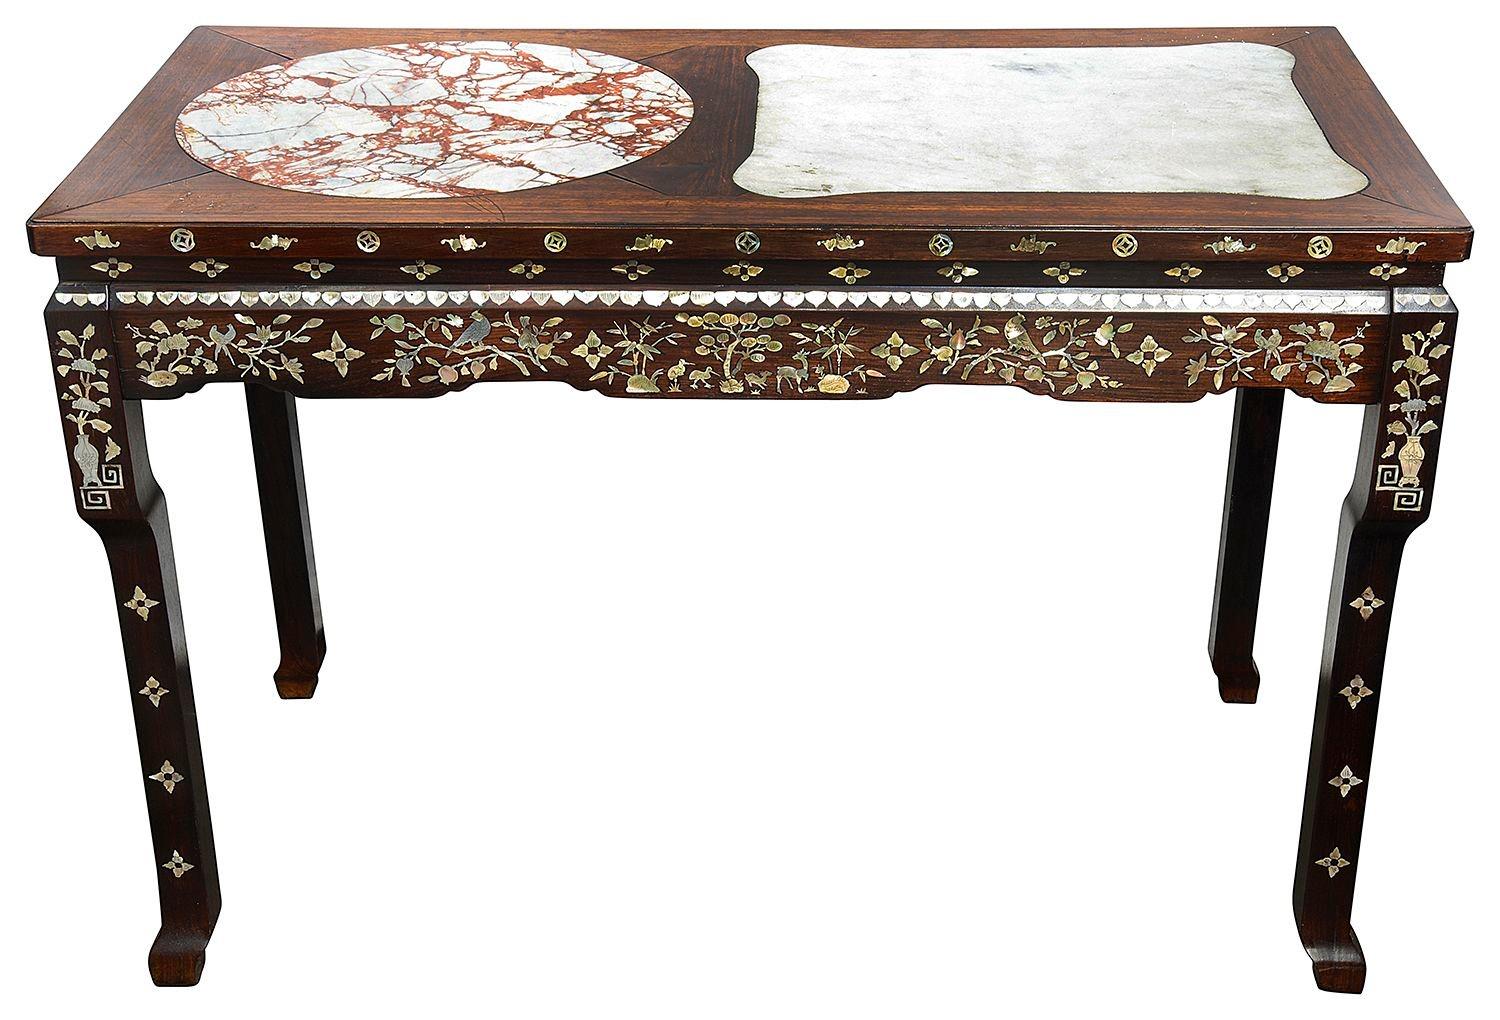 Ein sehr guter chinesischer Hartholztisch aus dem späten 19. Jahrhundert mit Marmorintarsien auf der Platte und Perlmuttintarsien auf dem Fries und den Beinen, um 1890.

Charge 72 